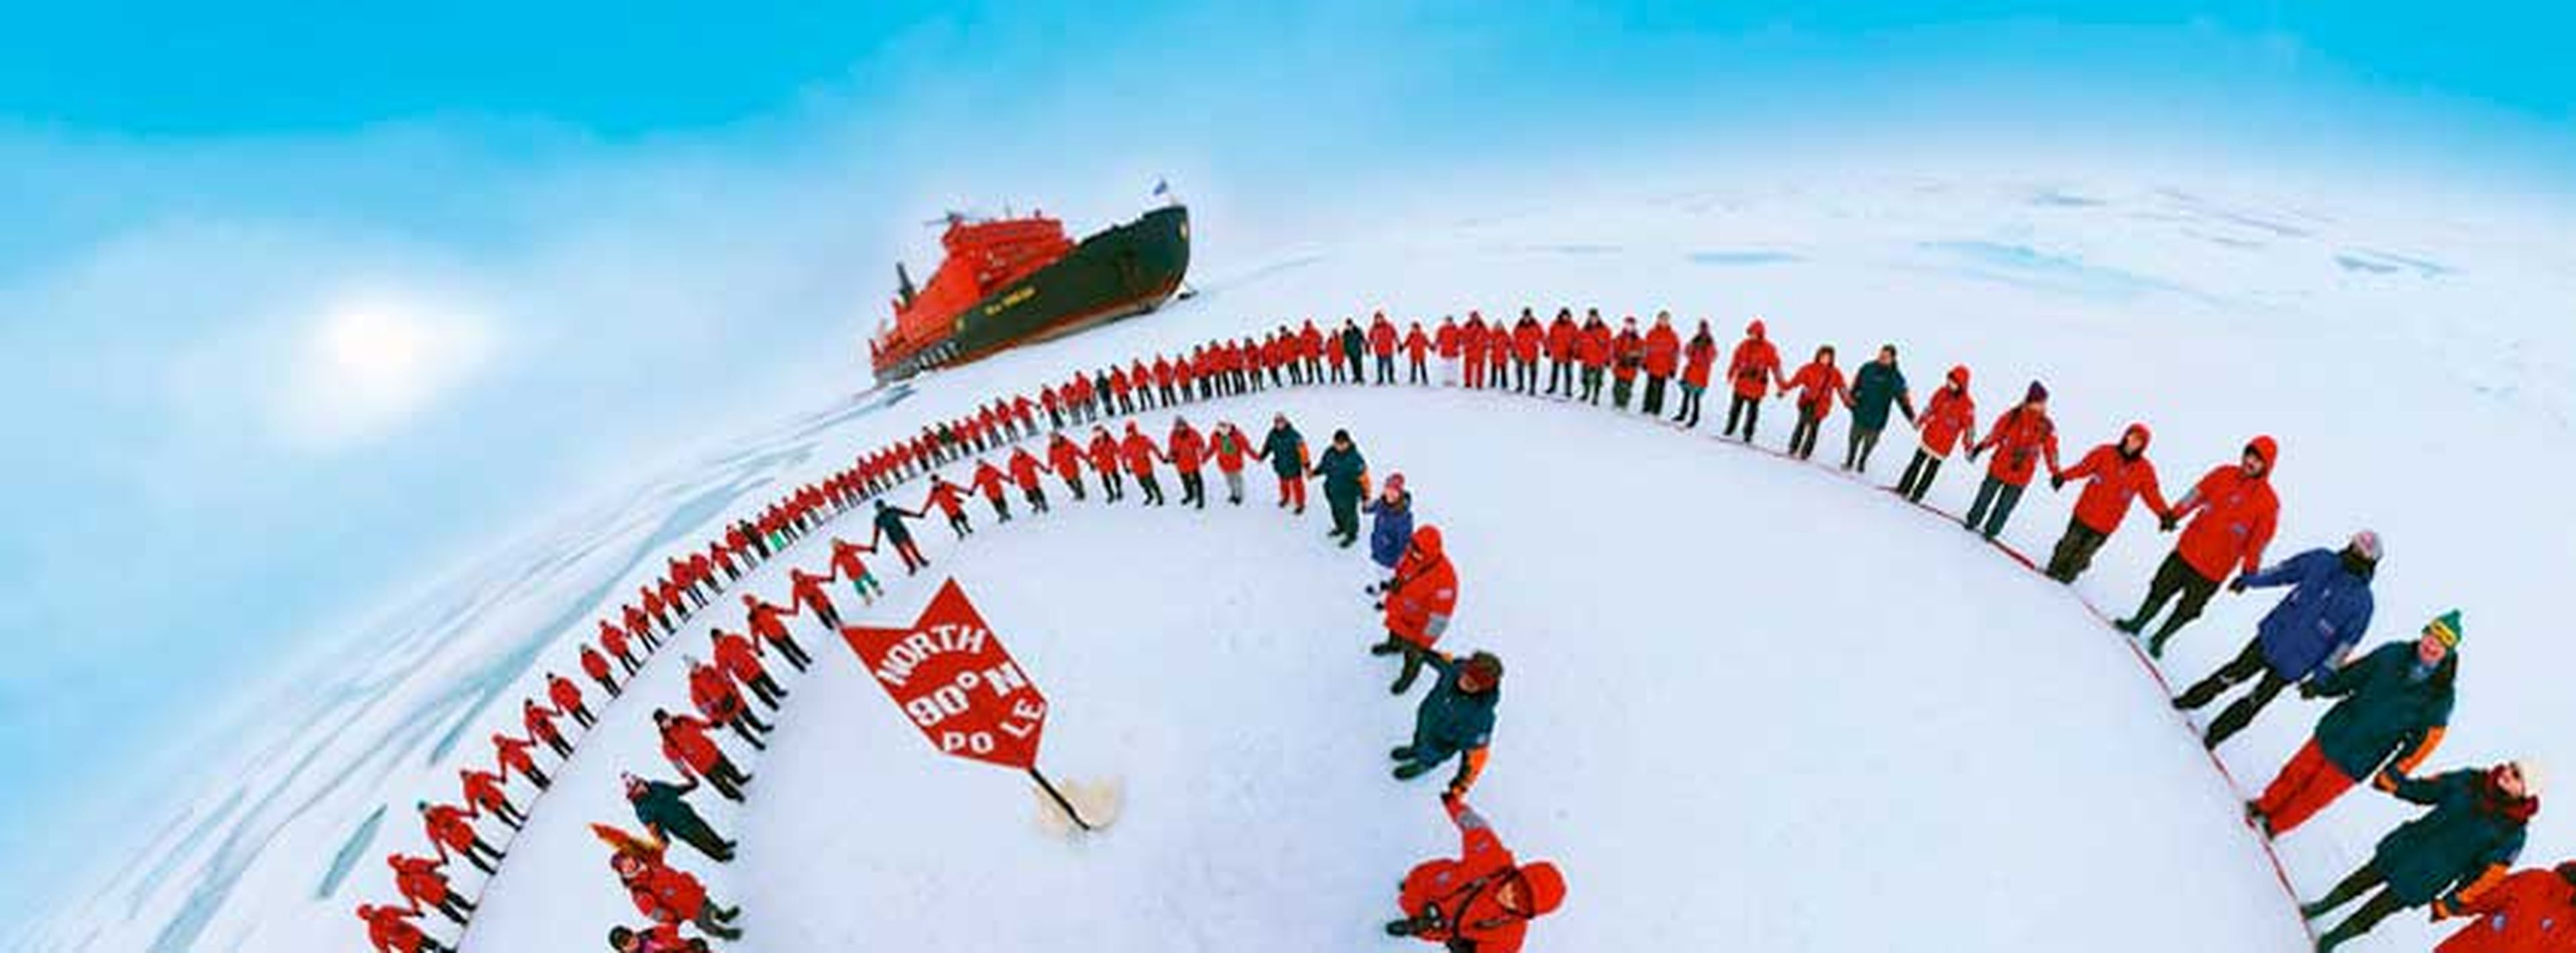 Los pasajeros del '50 Años de la Victoria' festejan la llegada al Polo Norte.